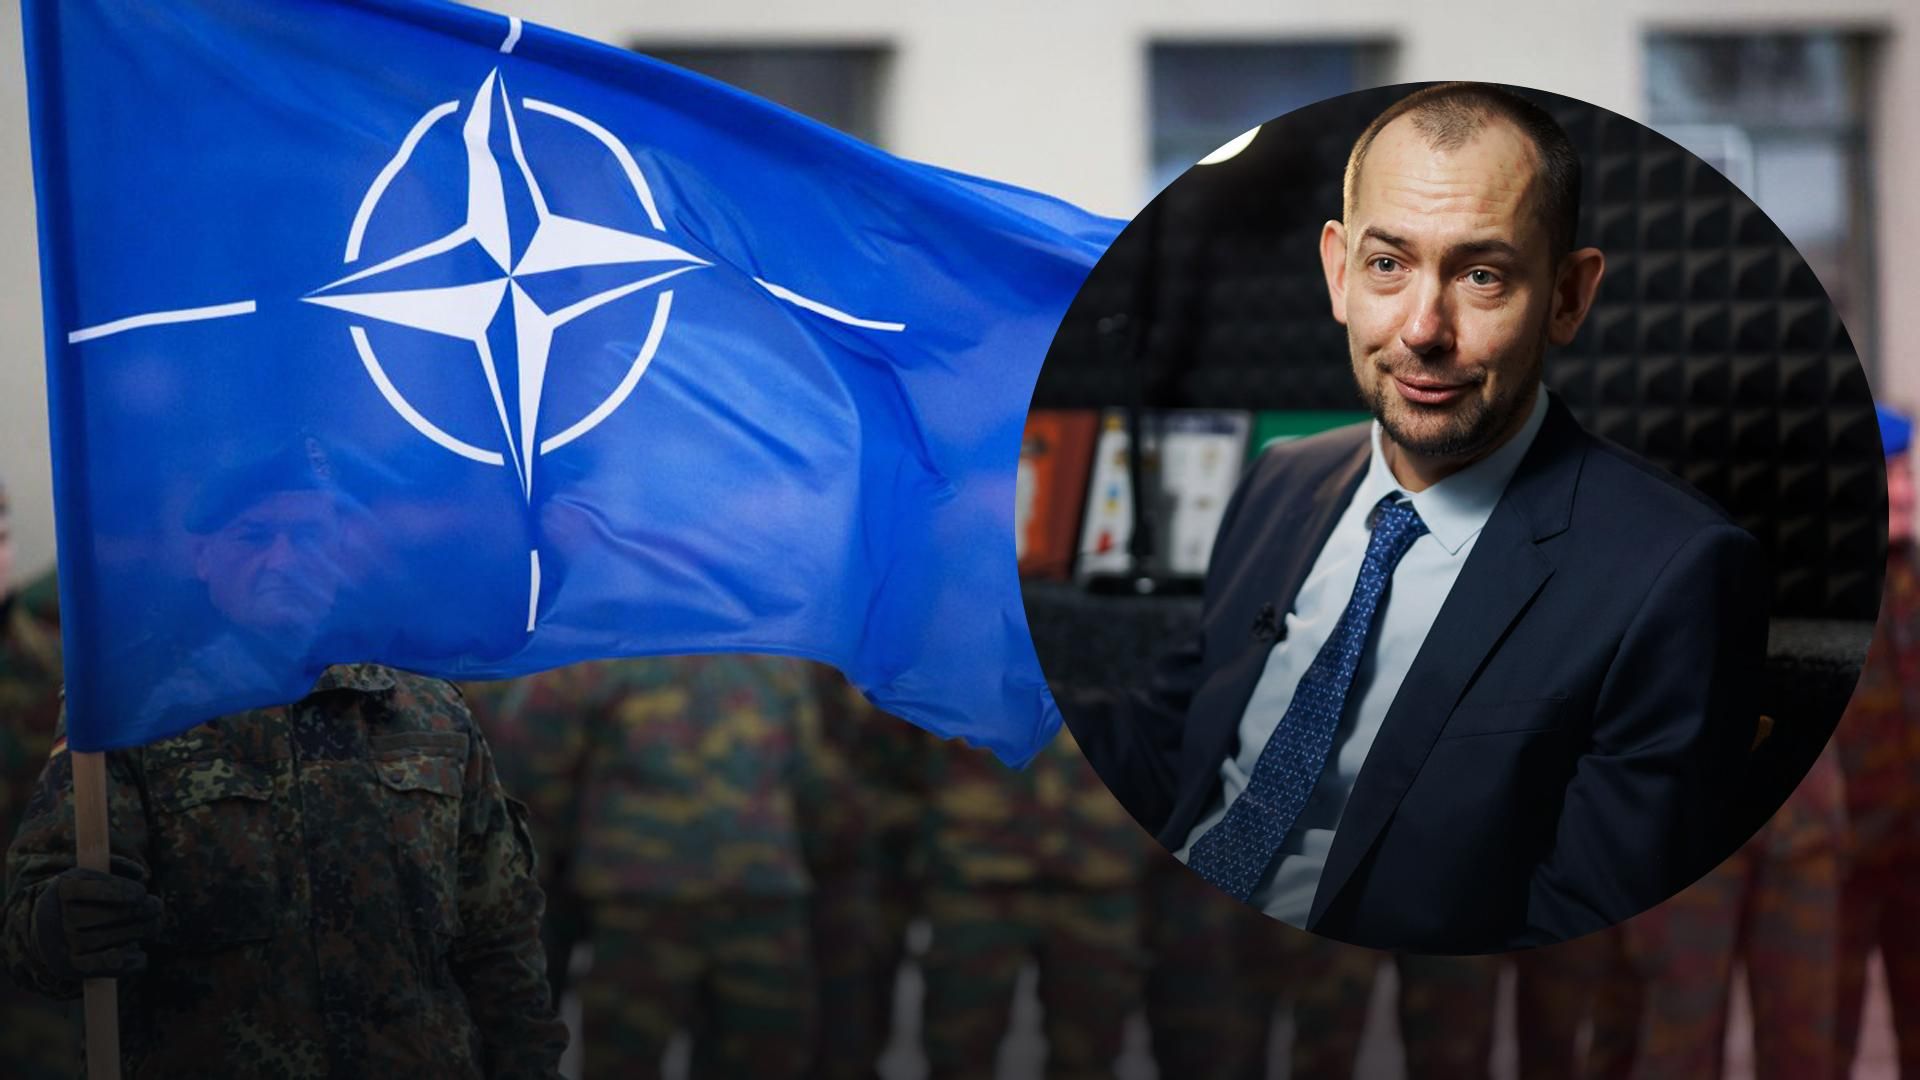 НАТО байдуже, Росію ніхто не боїться, – Цимбалюк